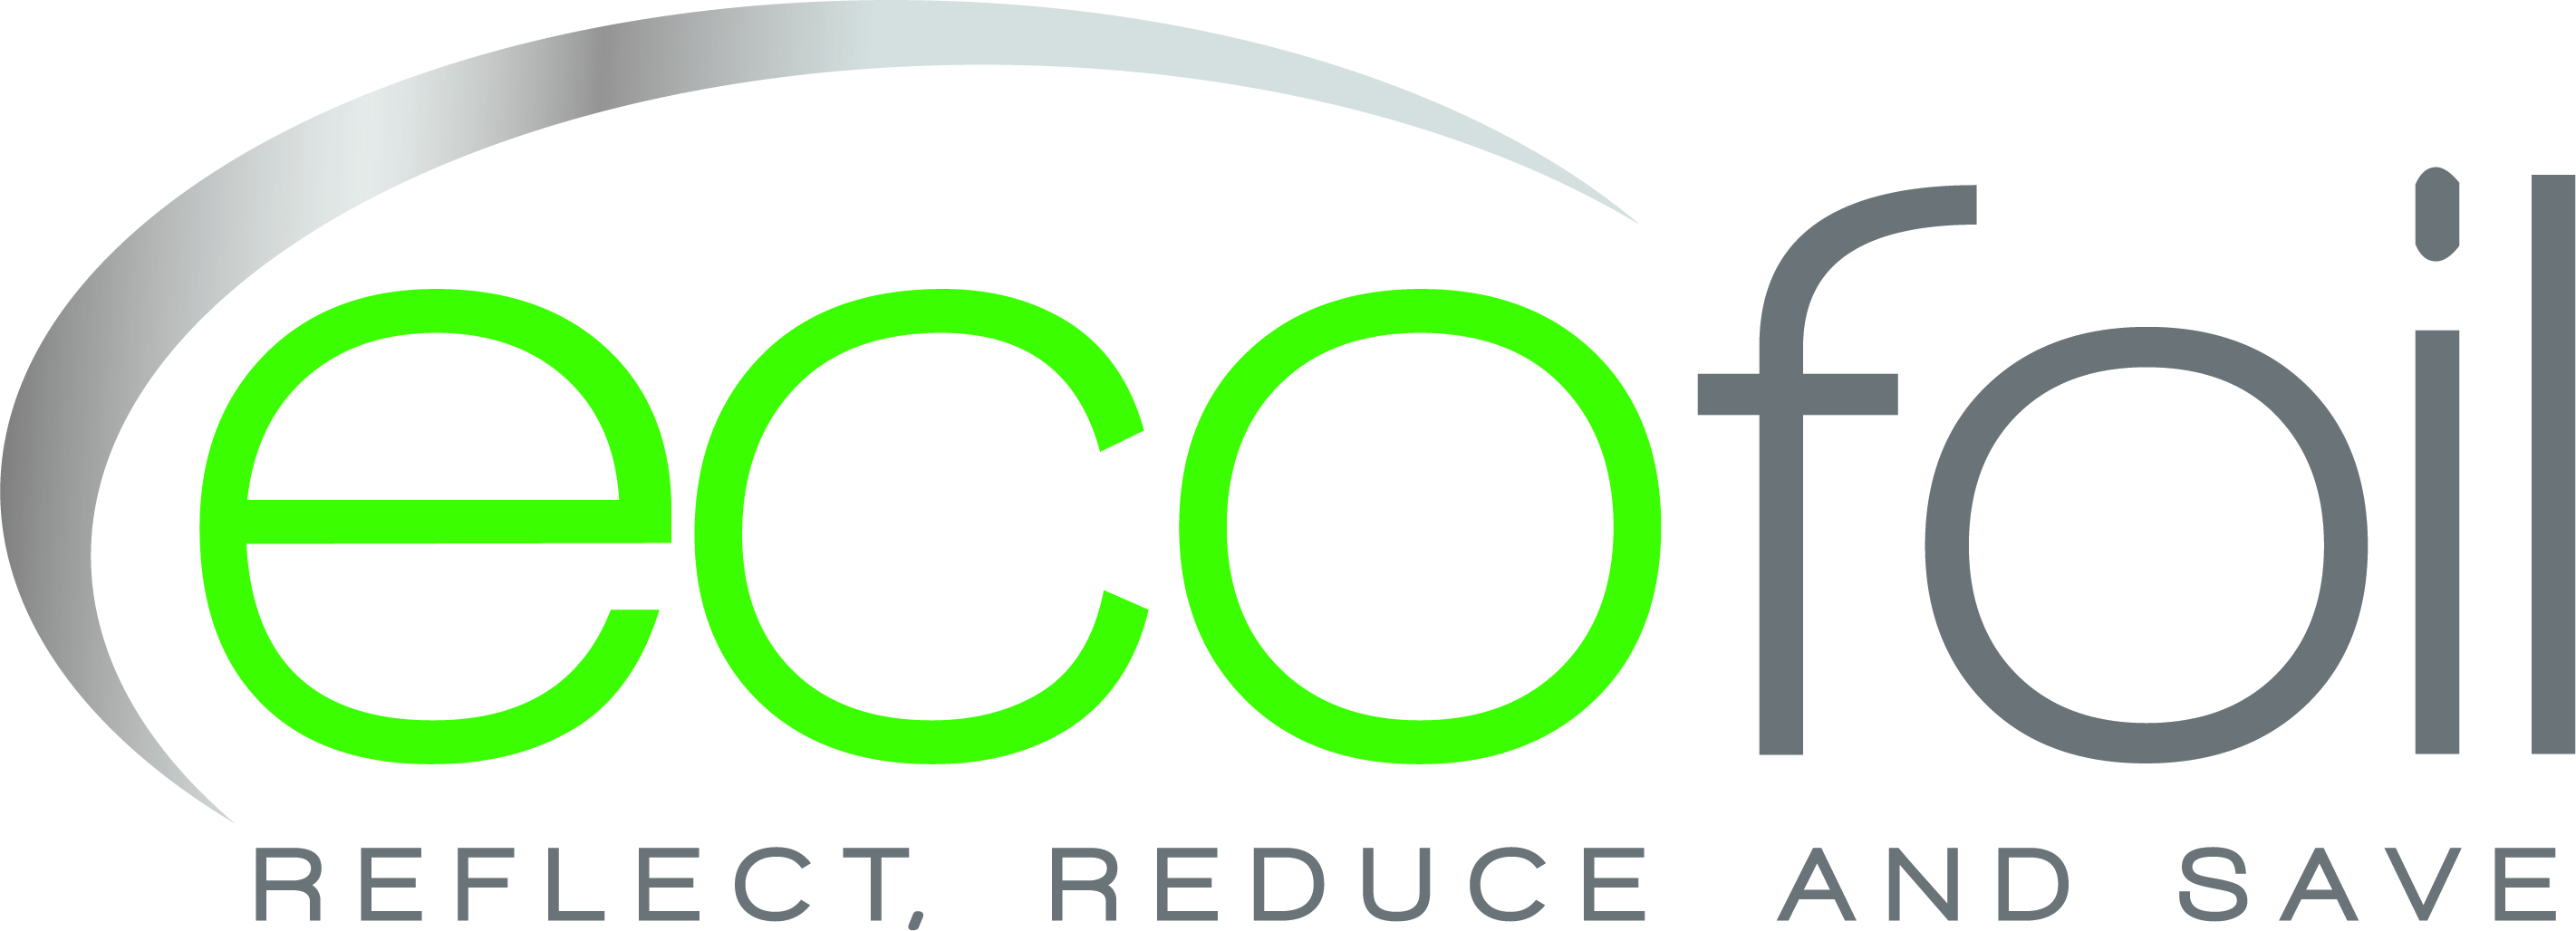 EcoFoil_Logo_2017